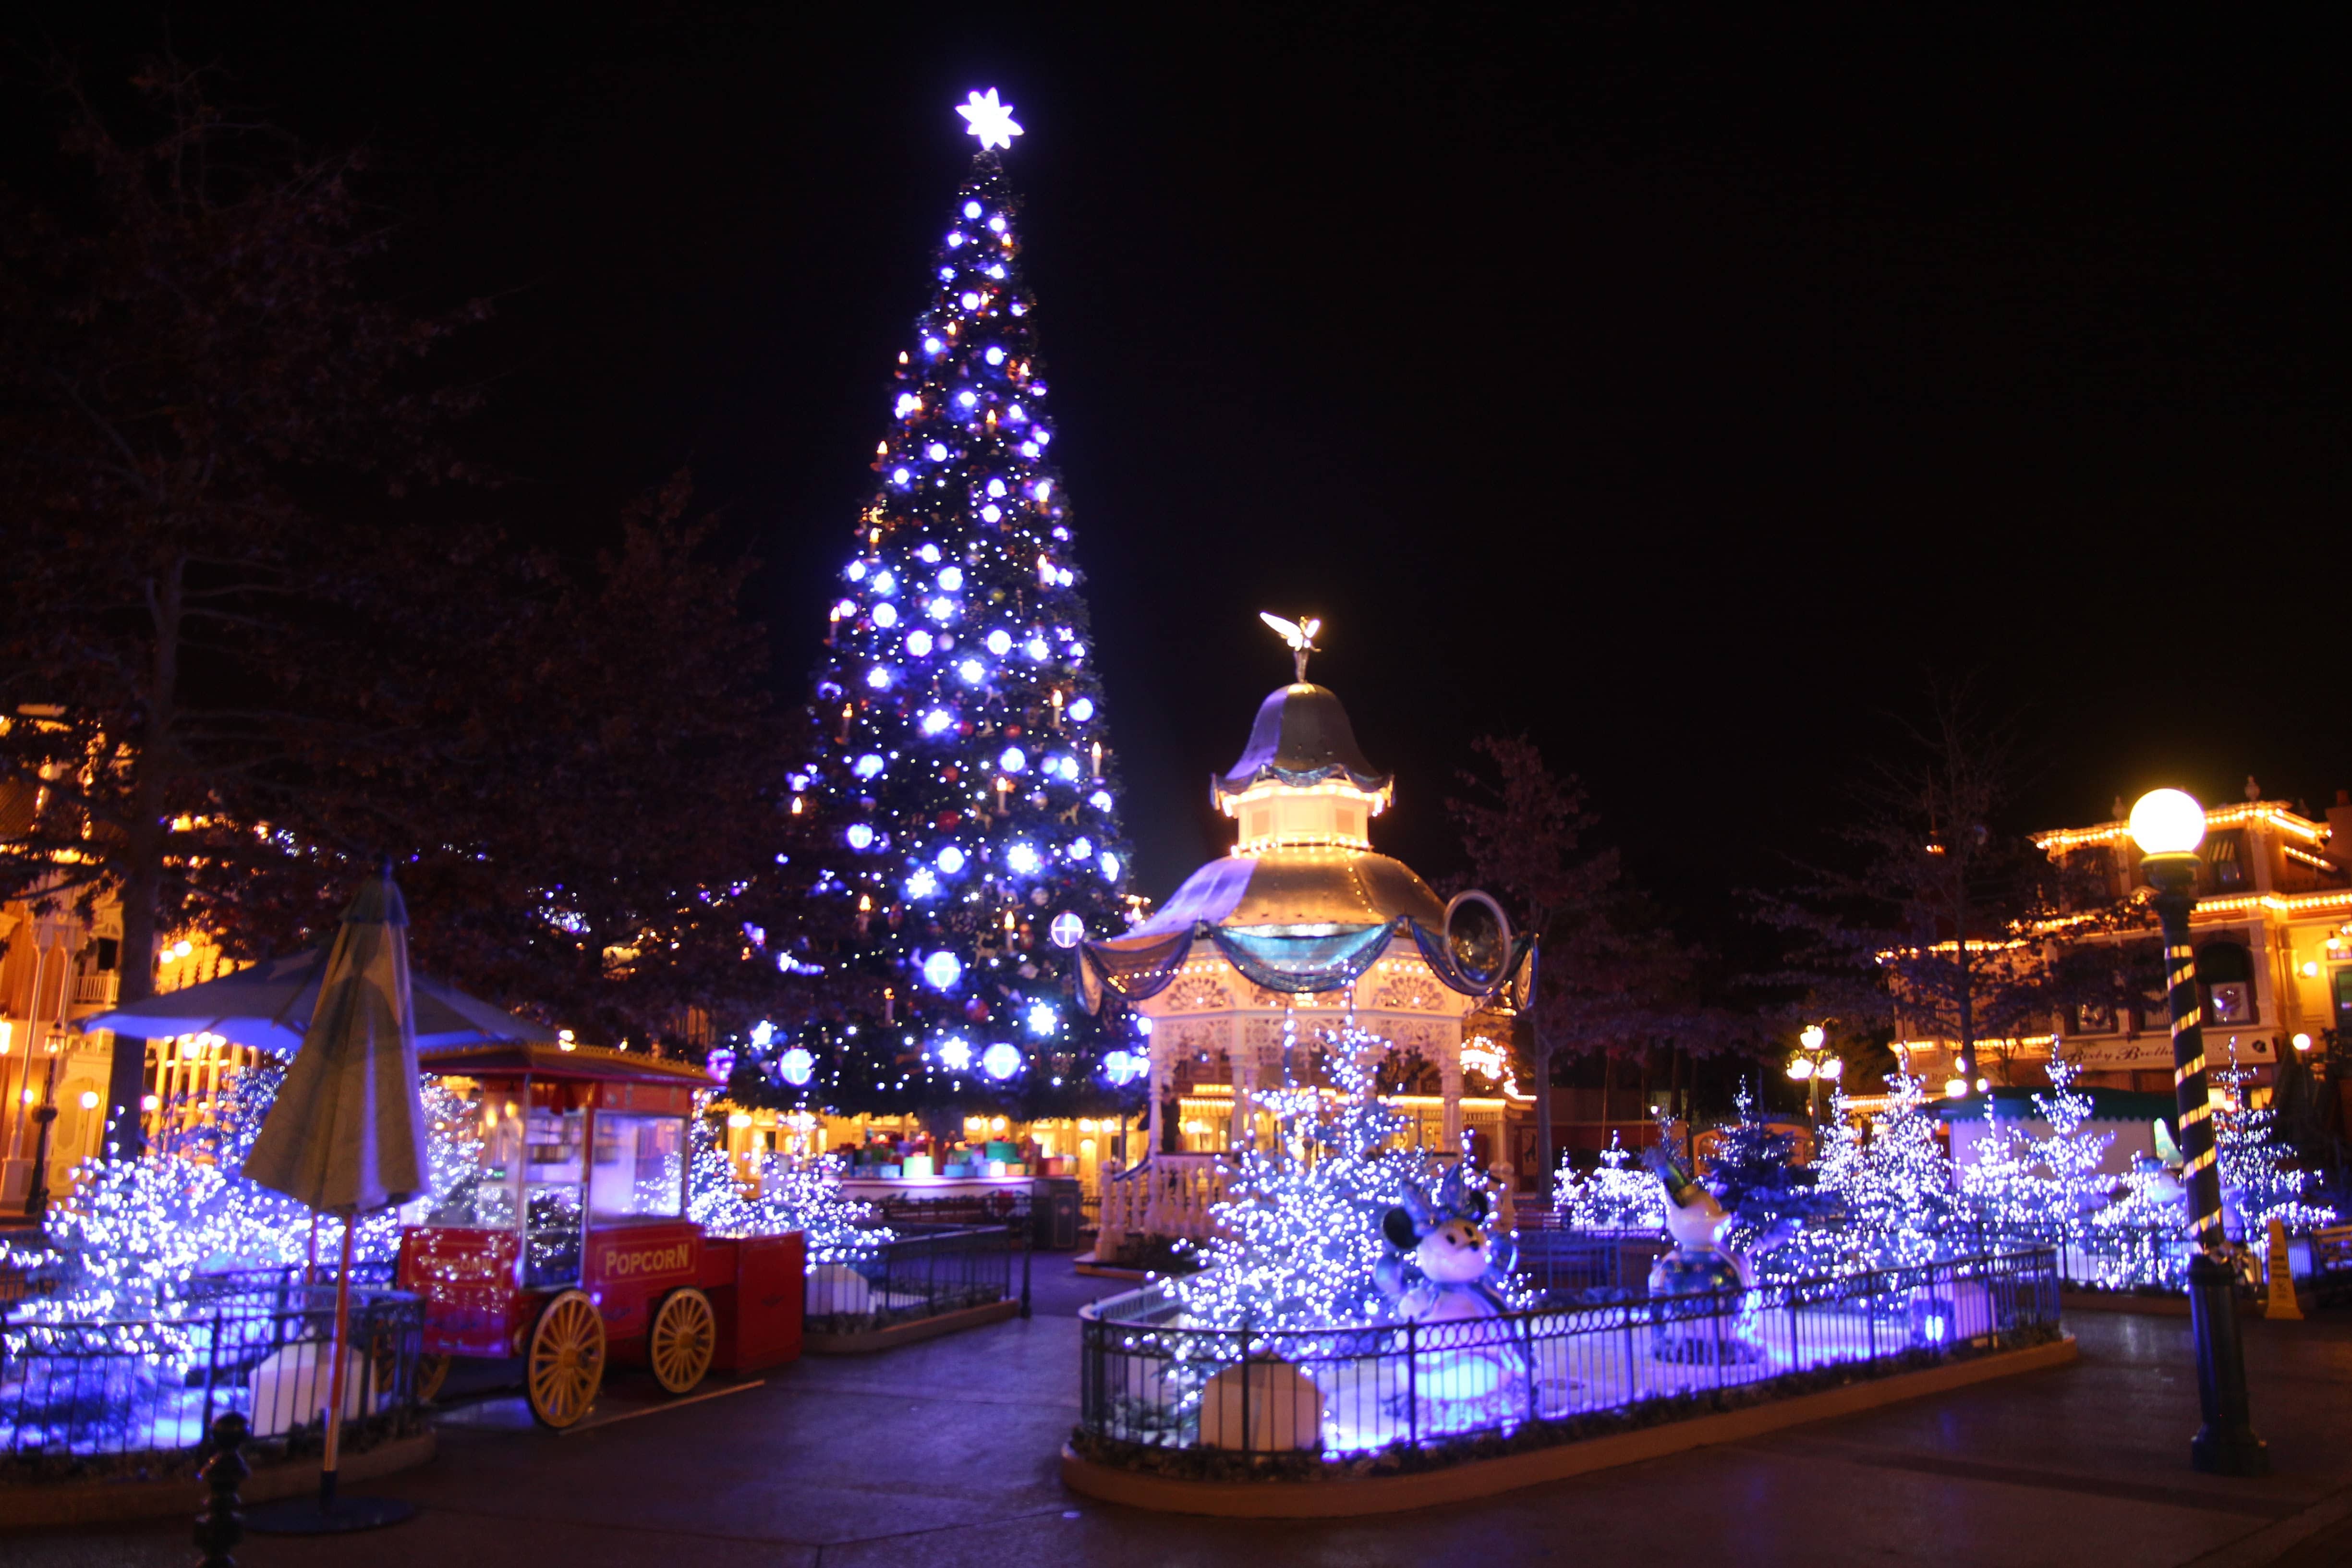 Disneyland Paris - Christmas 2017 - Townsquare by night